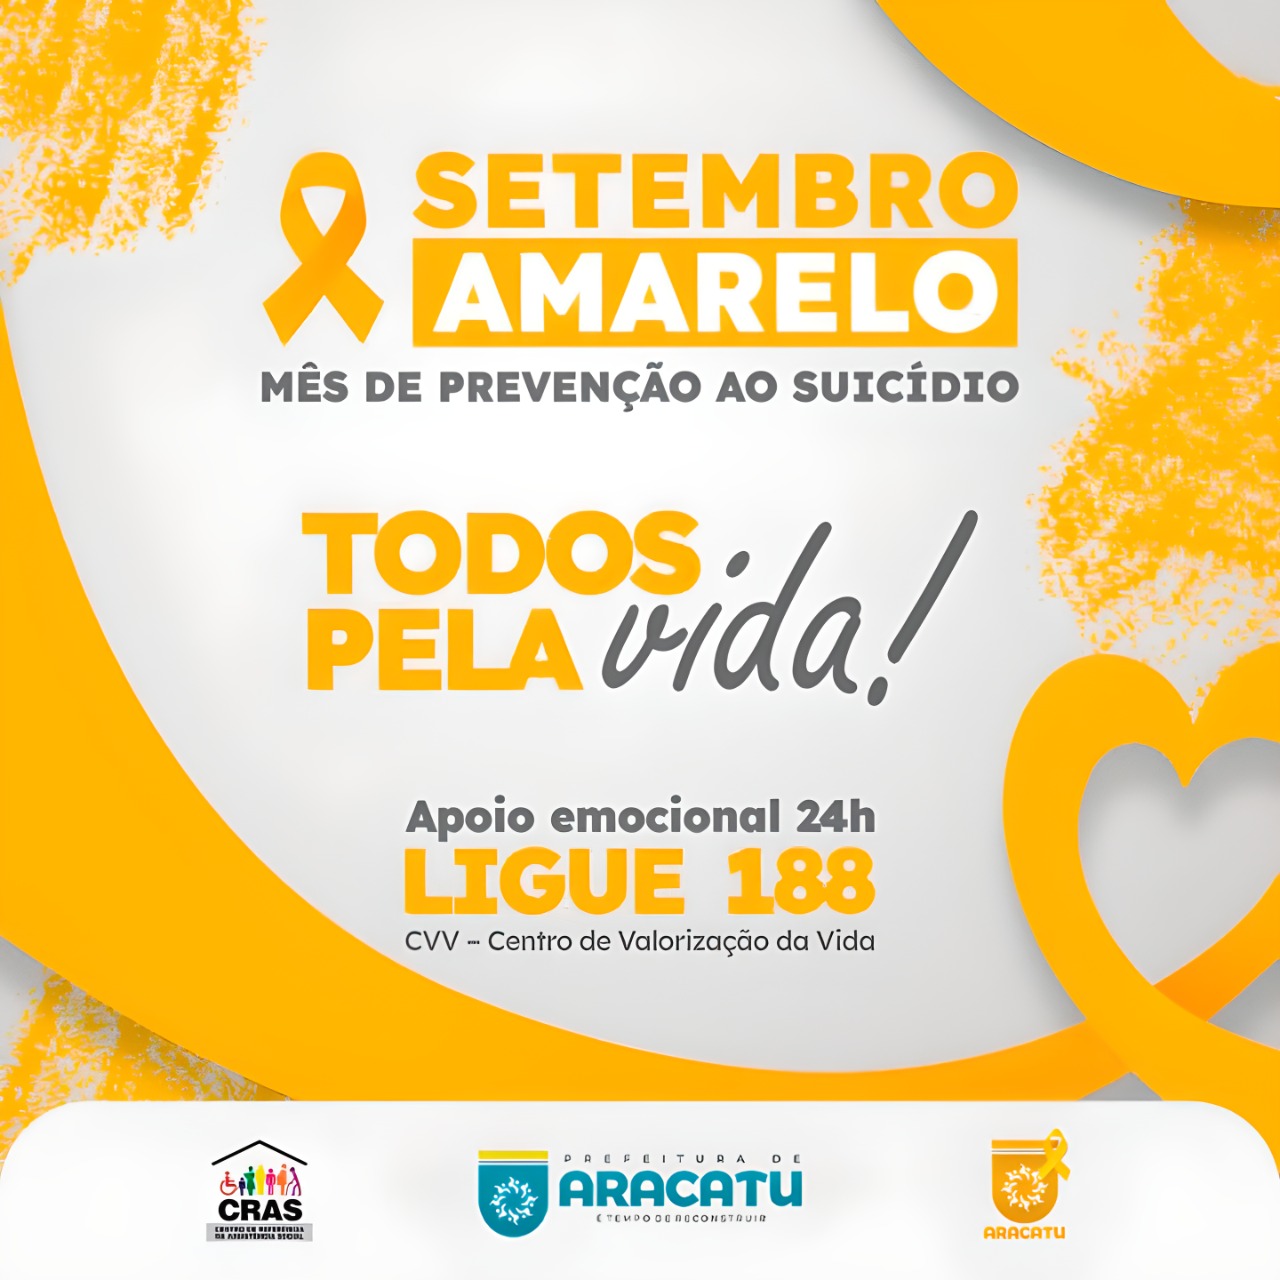 Prefeitura de Aracatu muda perfil em redes socais para chamar atenção sobre o Setembro Amarelo